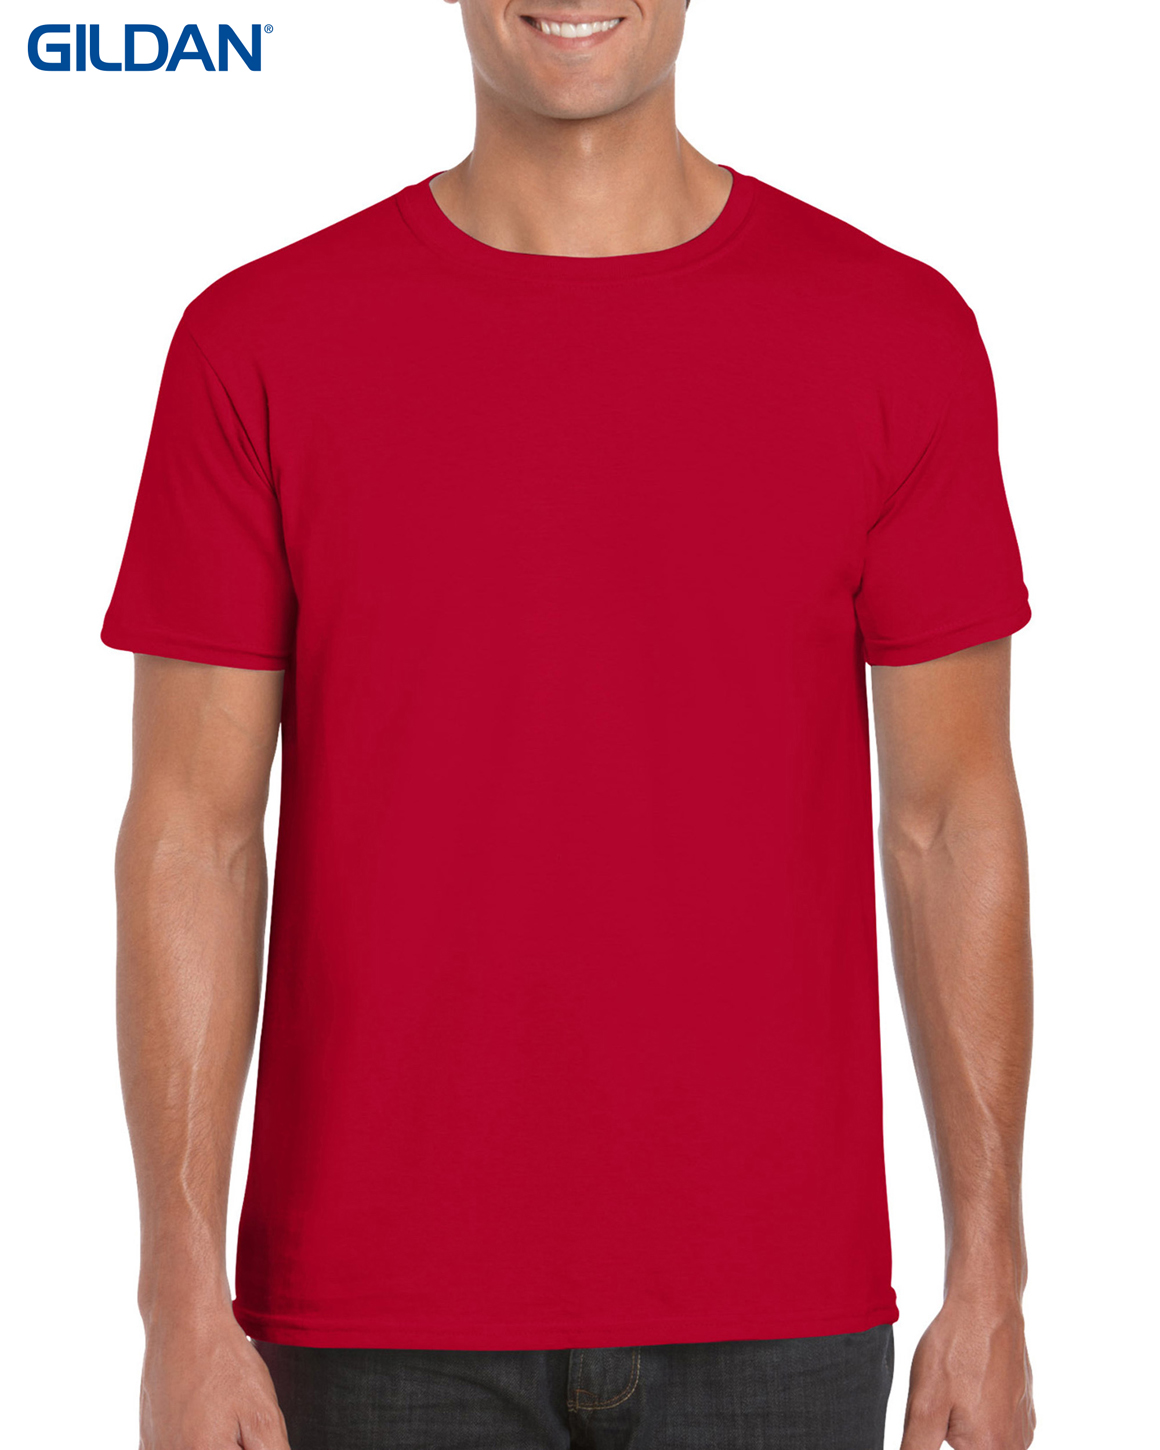 Download T Shirts : GILDAN MENS LIGHTWEIGHT 150GM 100% COTTON CN T ...